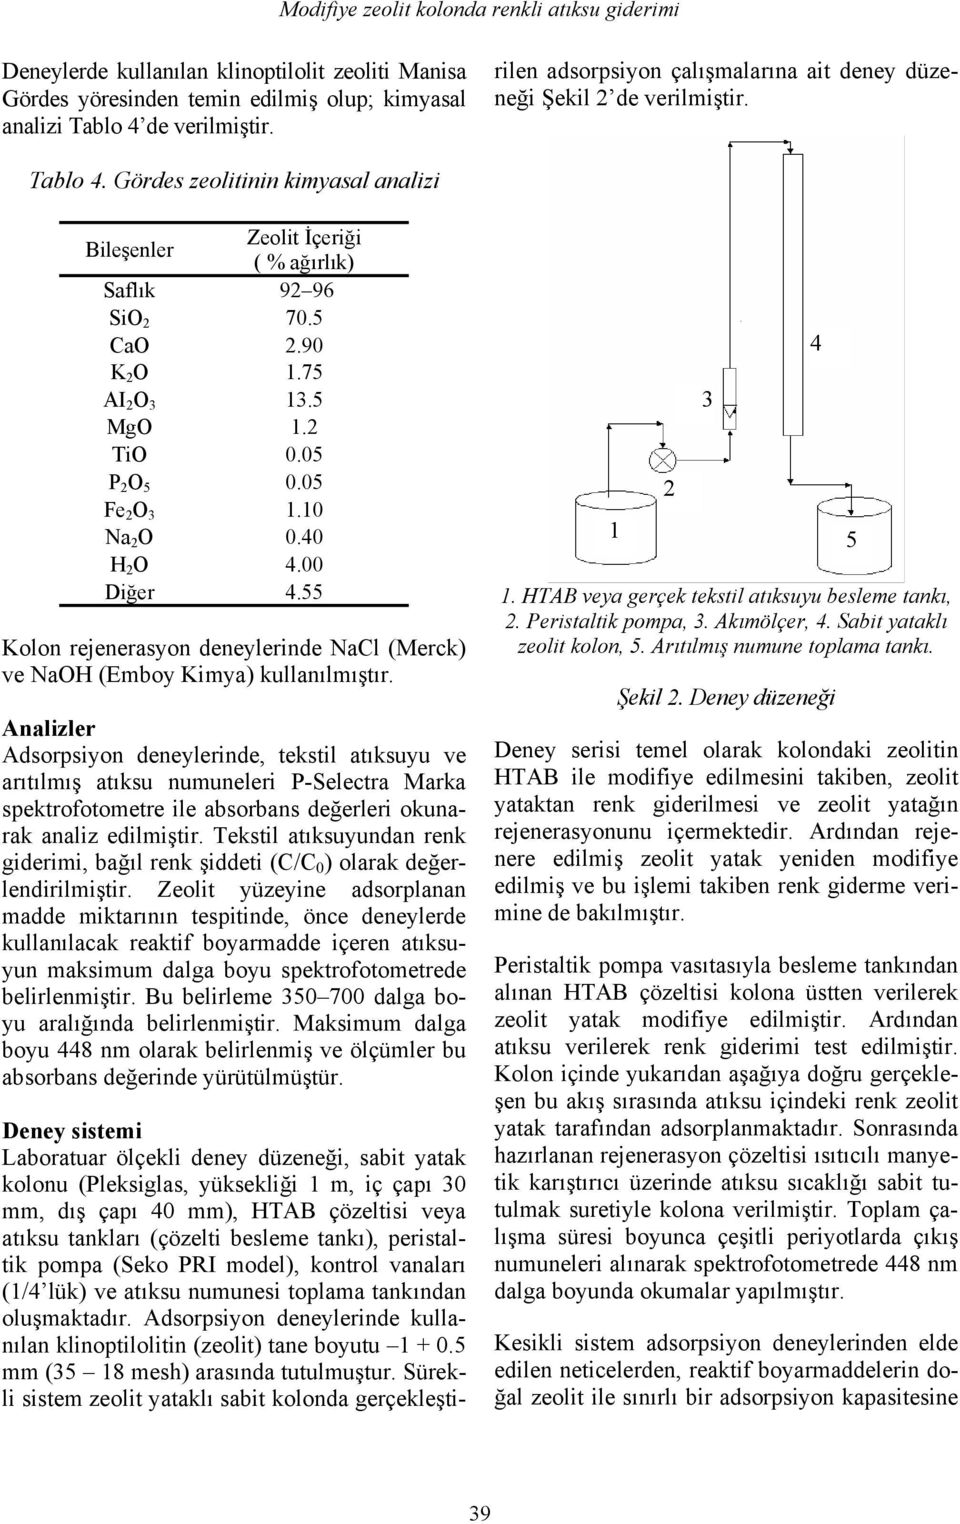 peristaltik pompa (Seko PRI model), kontrol vanaları (1/4 lük) ve atıksu numunesi toplama tankından oluşmaktadır. Adsorpsiyon deneylerinde kullanılan klinoptilolitin (zeolit) tane boyutu 1 + 0.